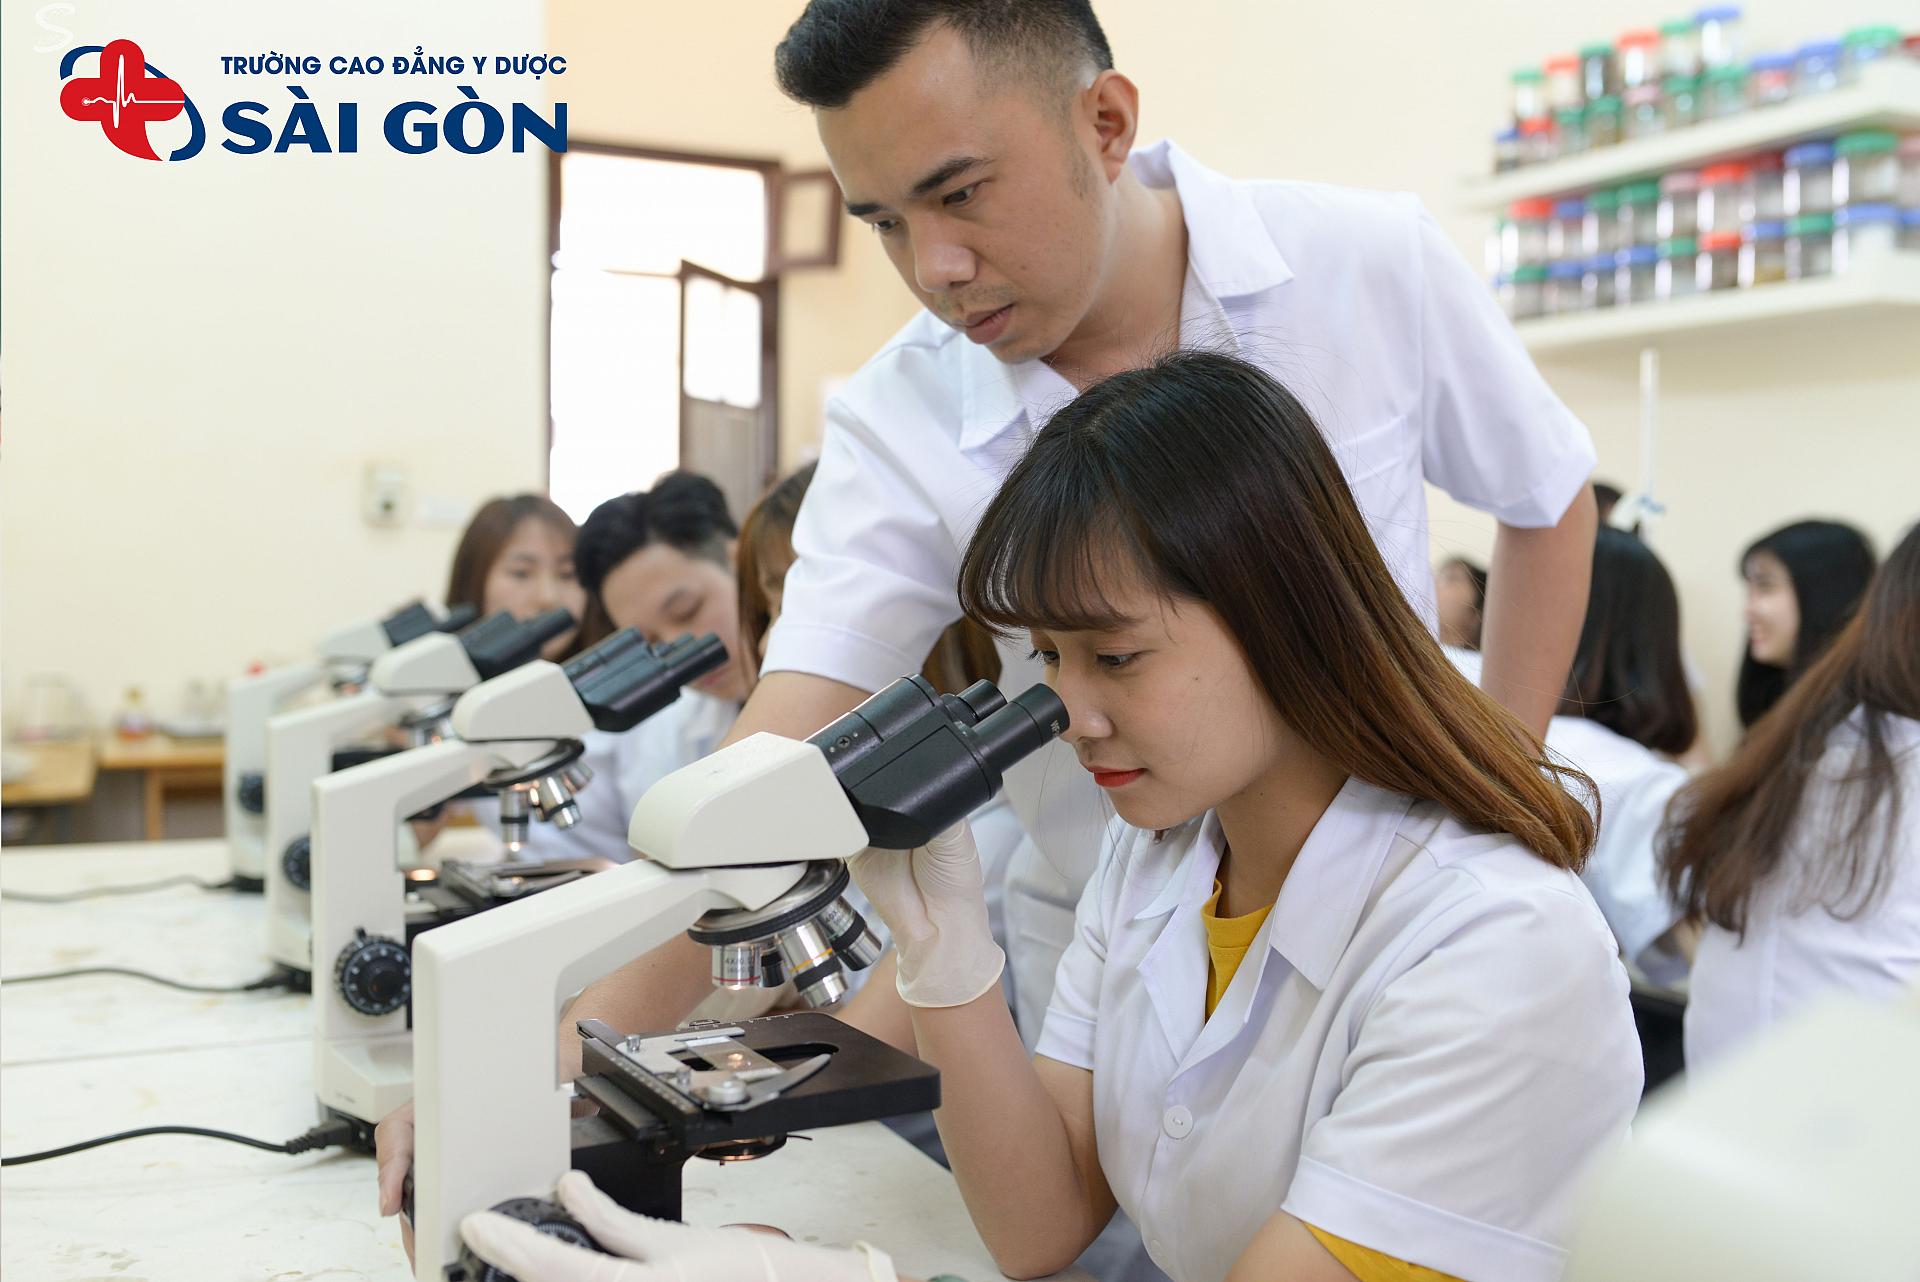 Trường Cao đẳng y dược Sài Gòn đào tạo kỹ thuật viên xét nghiệm chất lượng